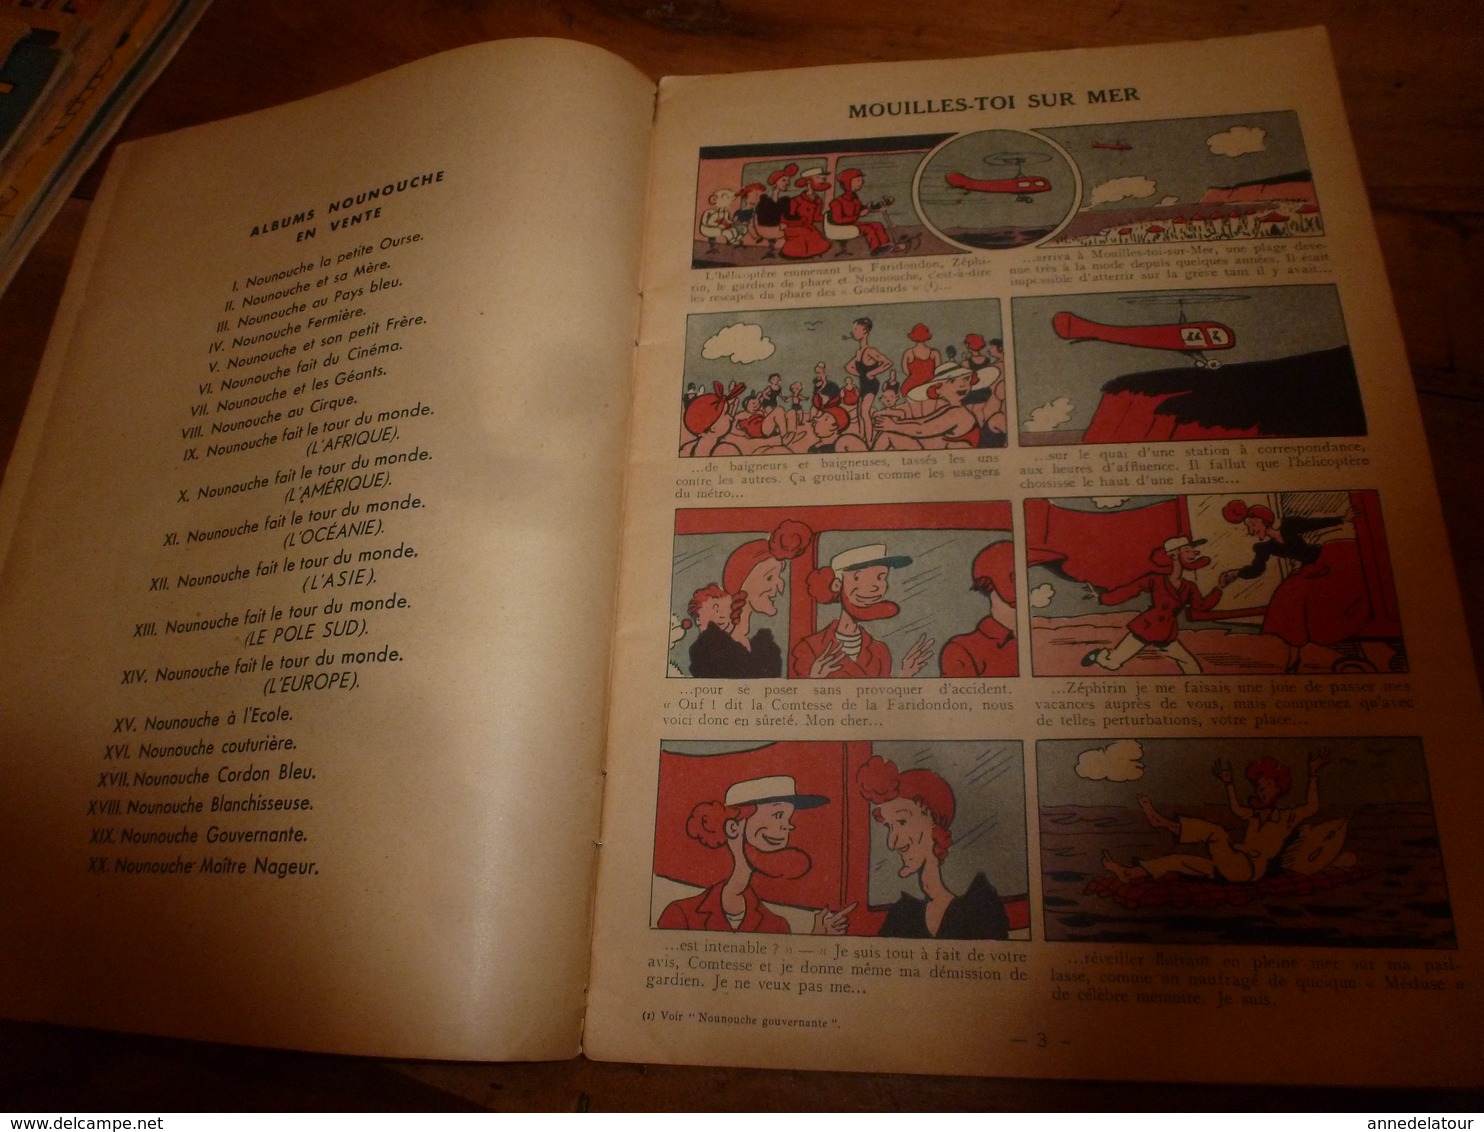 1953 NOUNOUCHE maitre-nageur,   texte et dessins de DURST